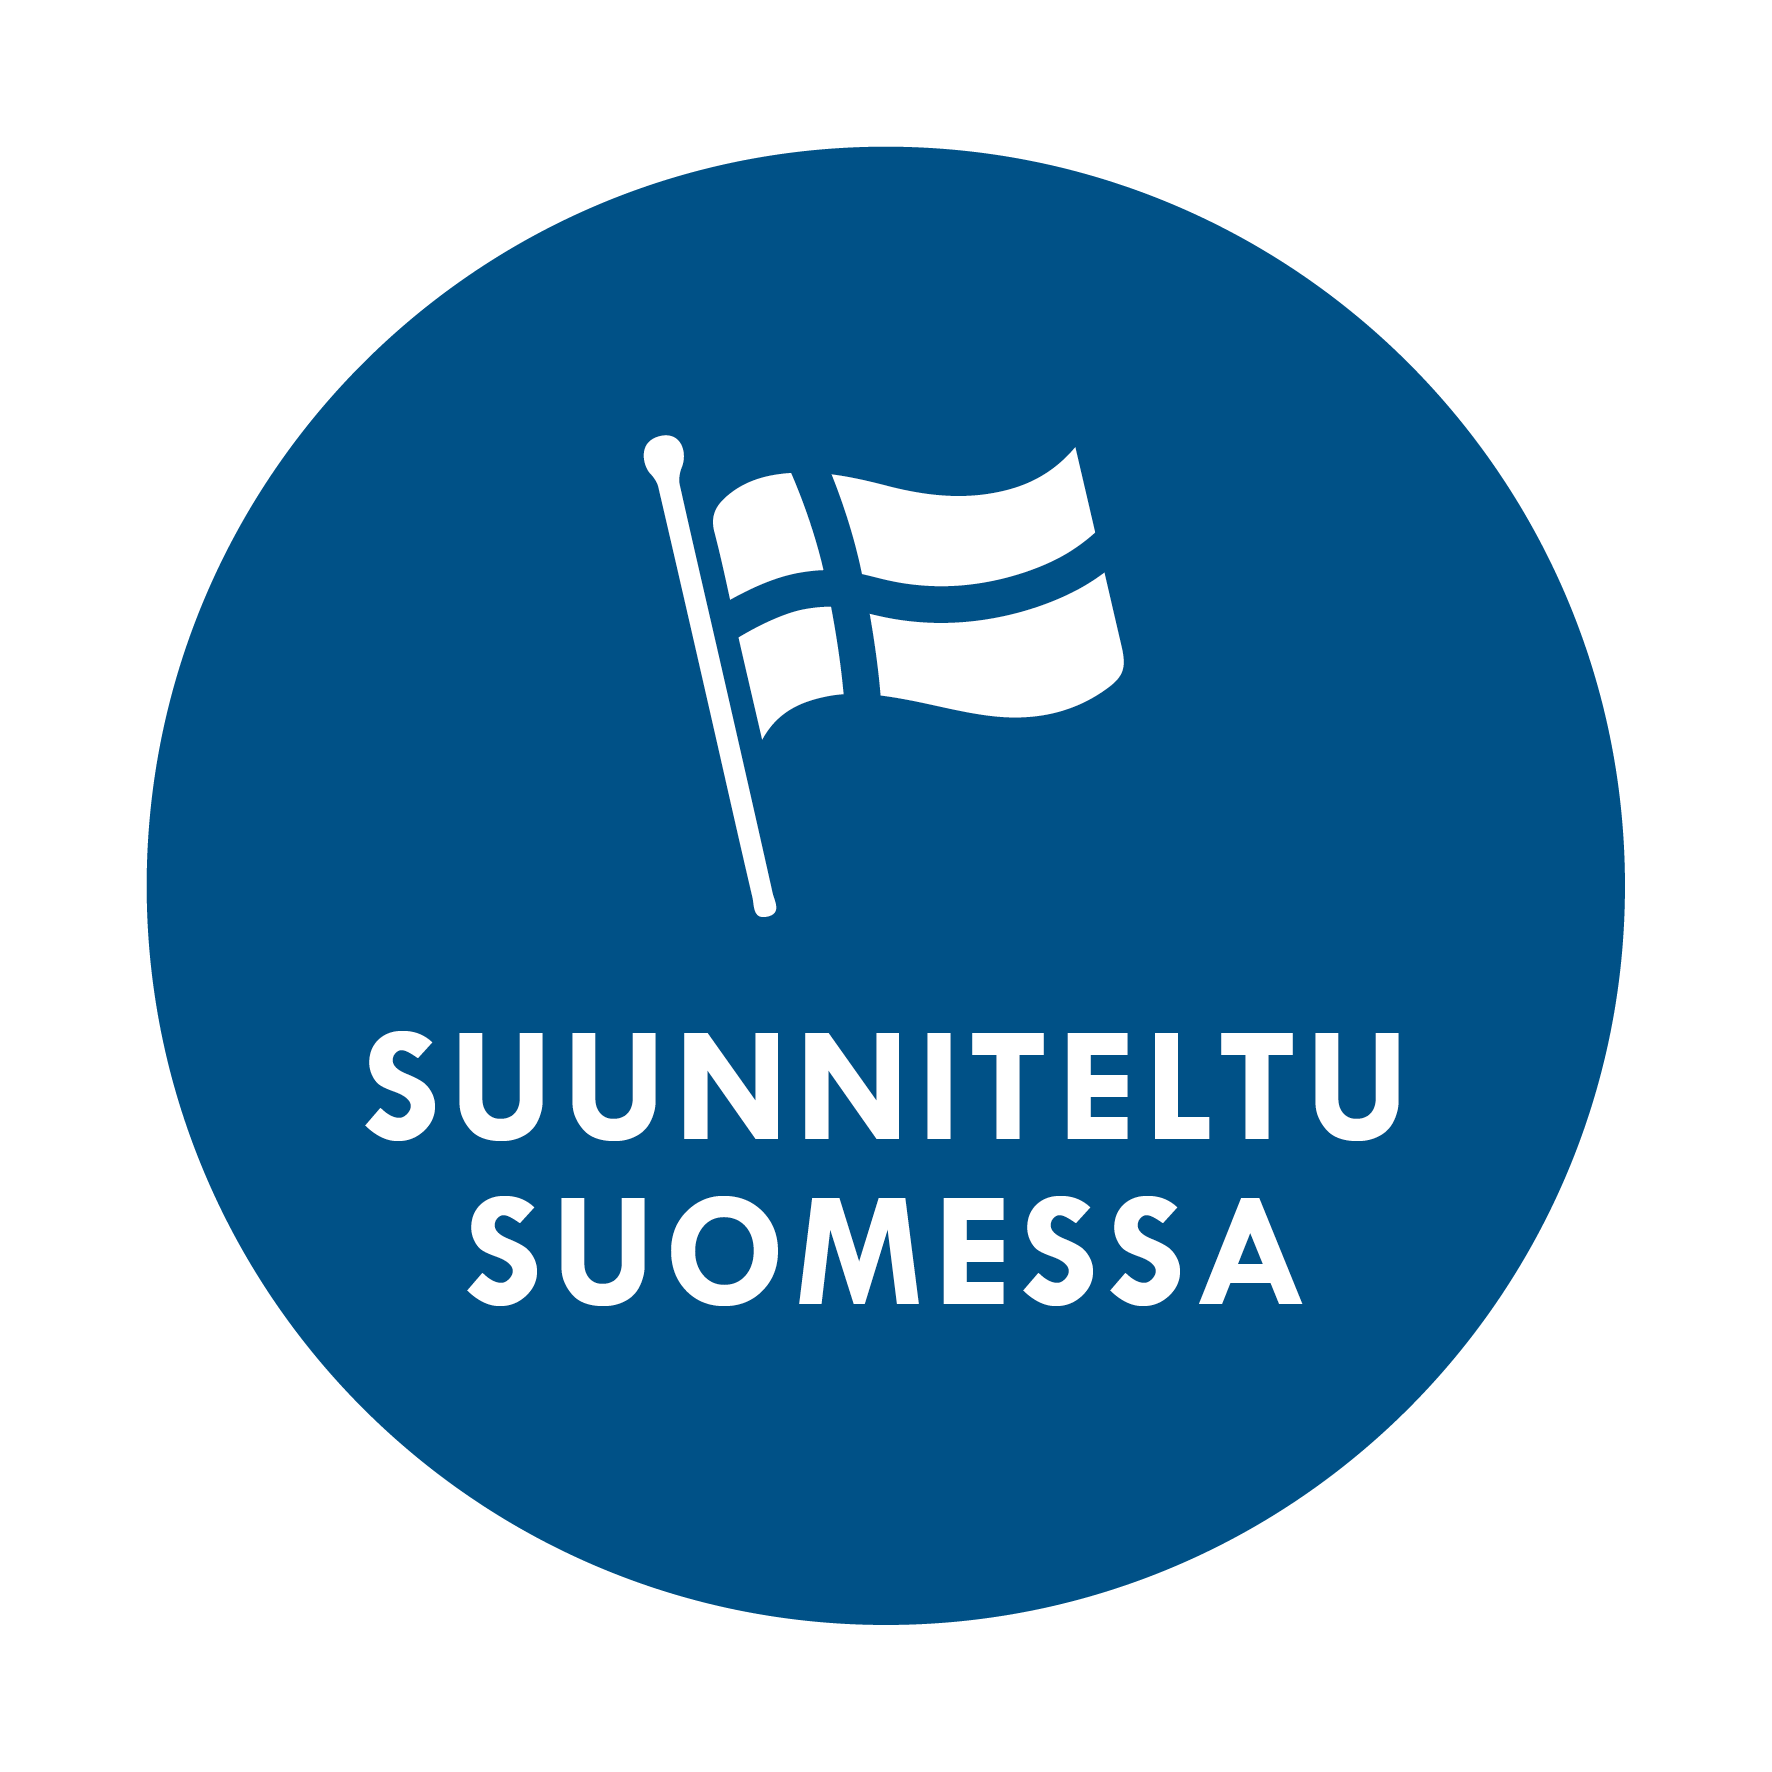 Suunniteltu Suomessa